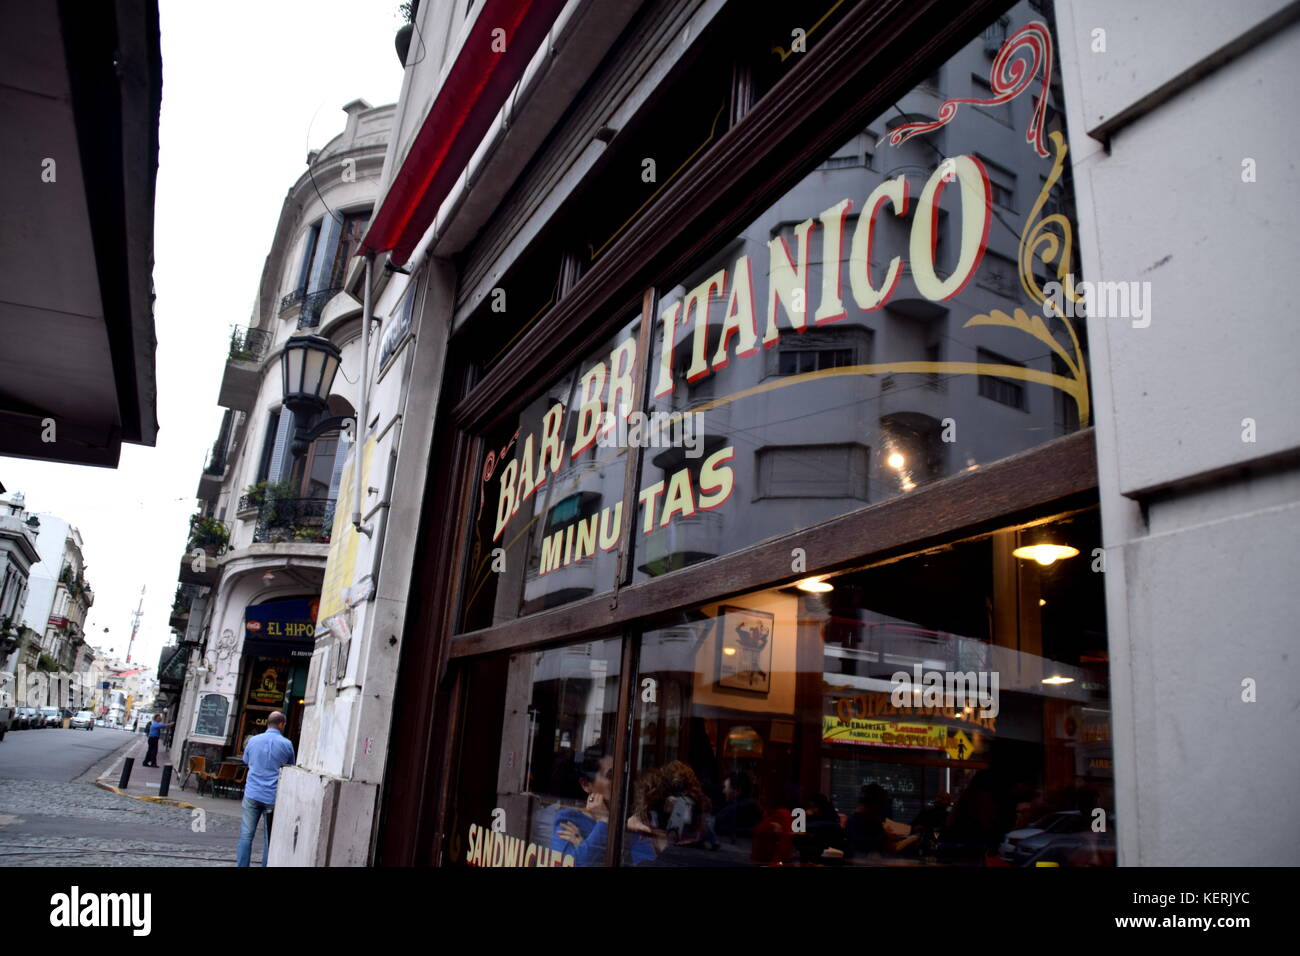 Bar británico (British) - notable y clásico de los bares de la ciudad de Buenos Aires - pub - restaurante en San Telmo Foto de stock